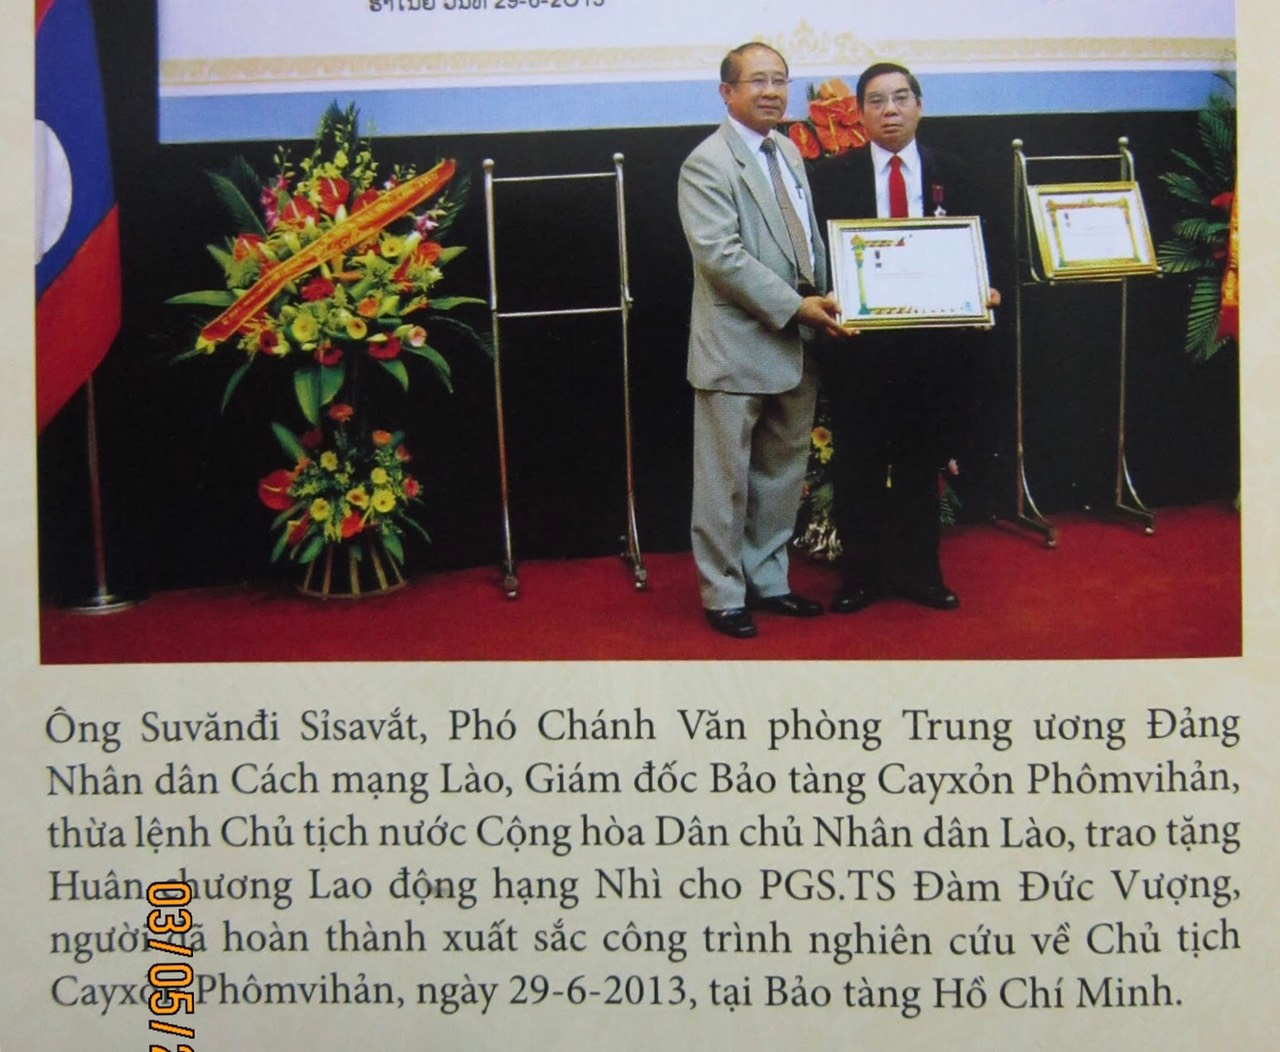 PGS.TS Đàm Đức Vượng tặng sách “ Cayxỏn Phômvihản- Tiểu sử và sự nghiệp” cho Trung ương Hội hữu nghị Lào-Việt Nam.